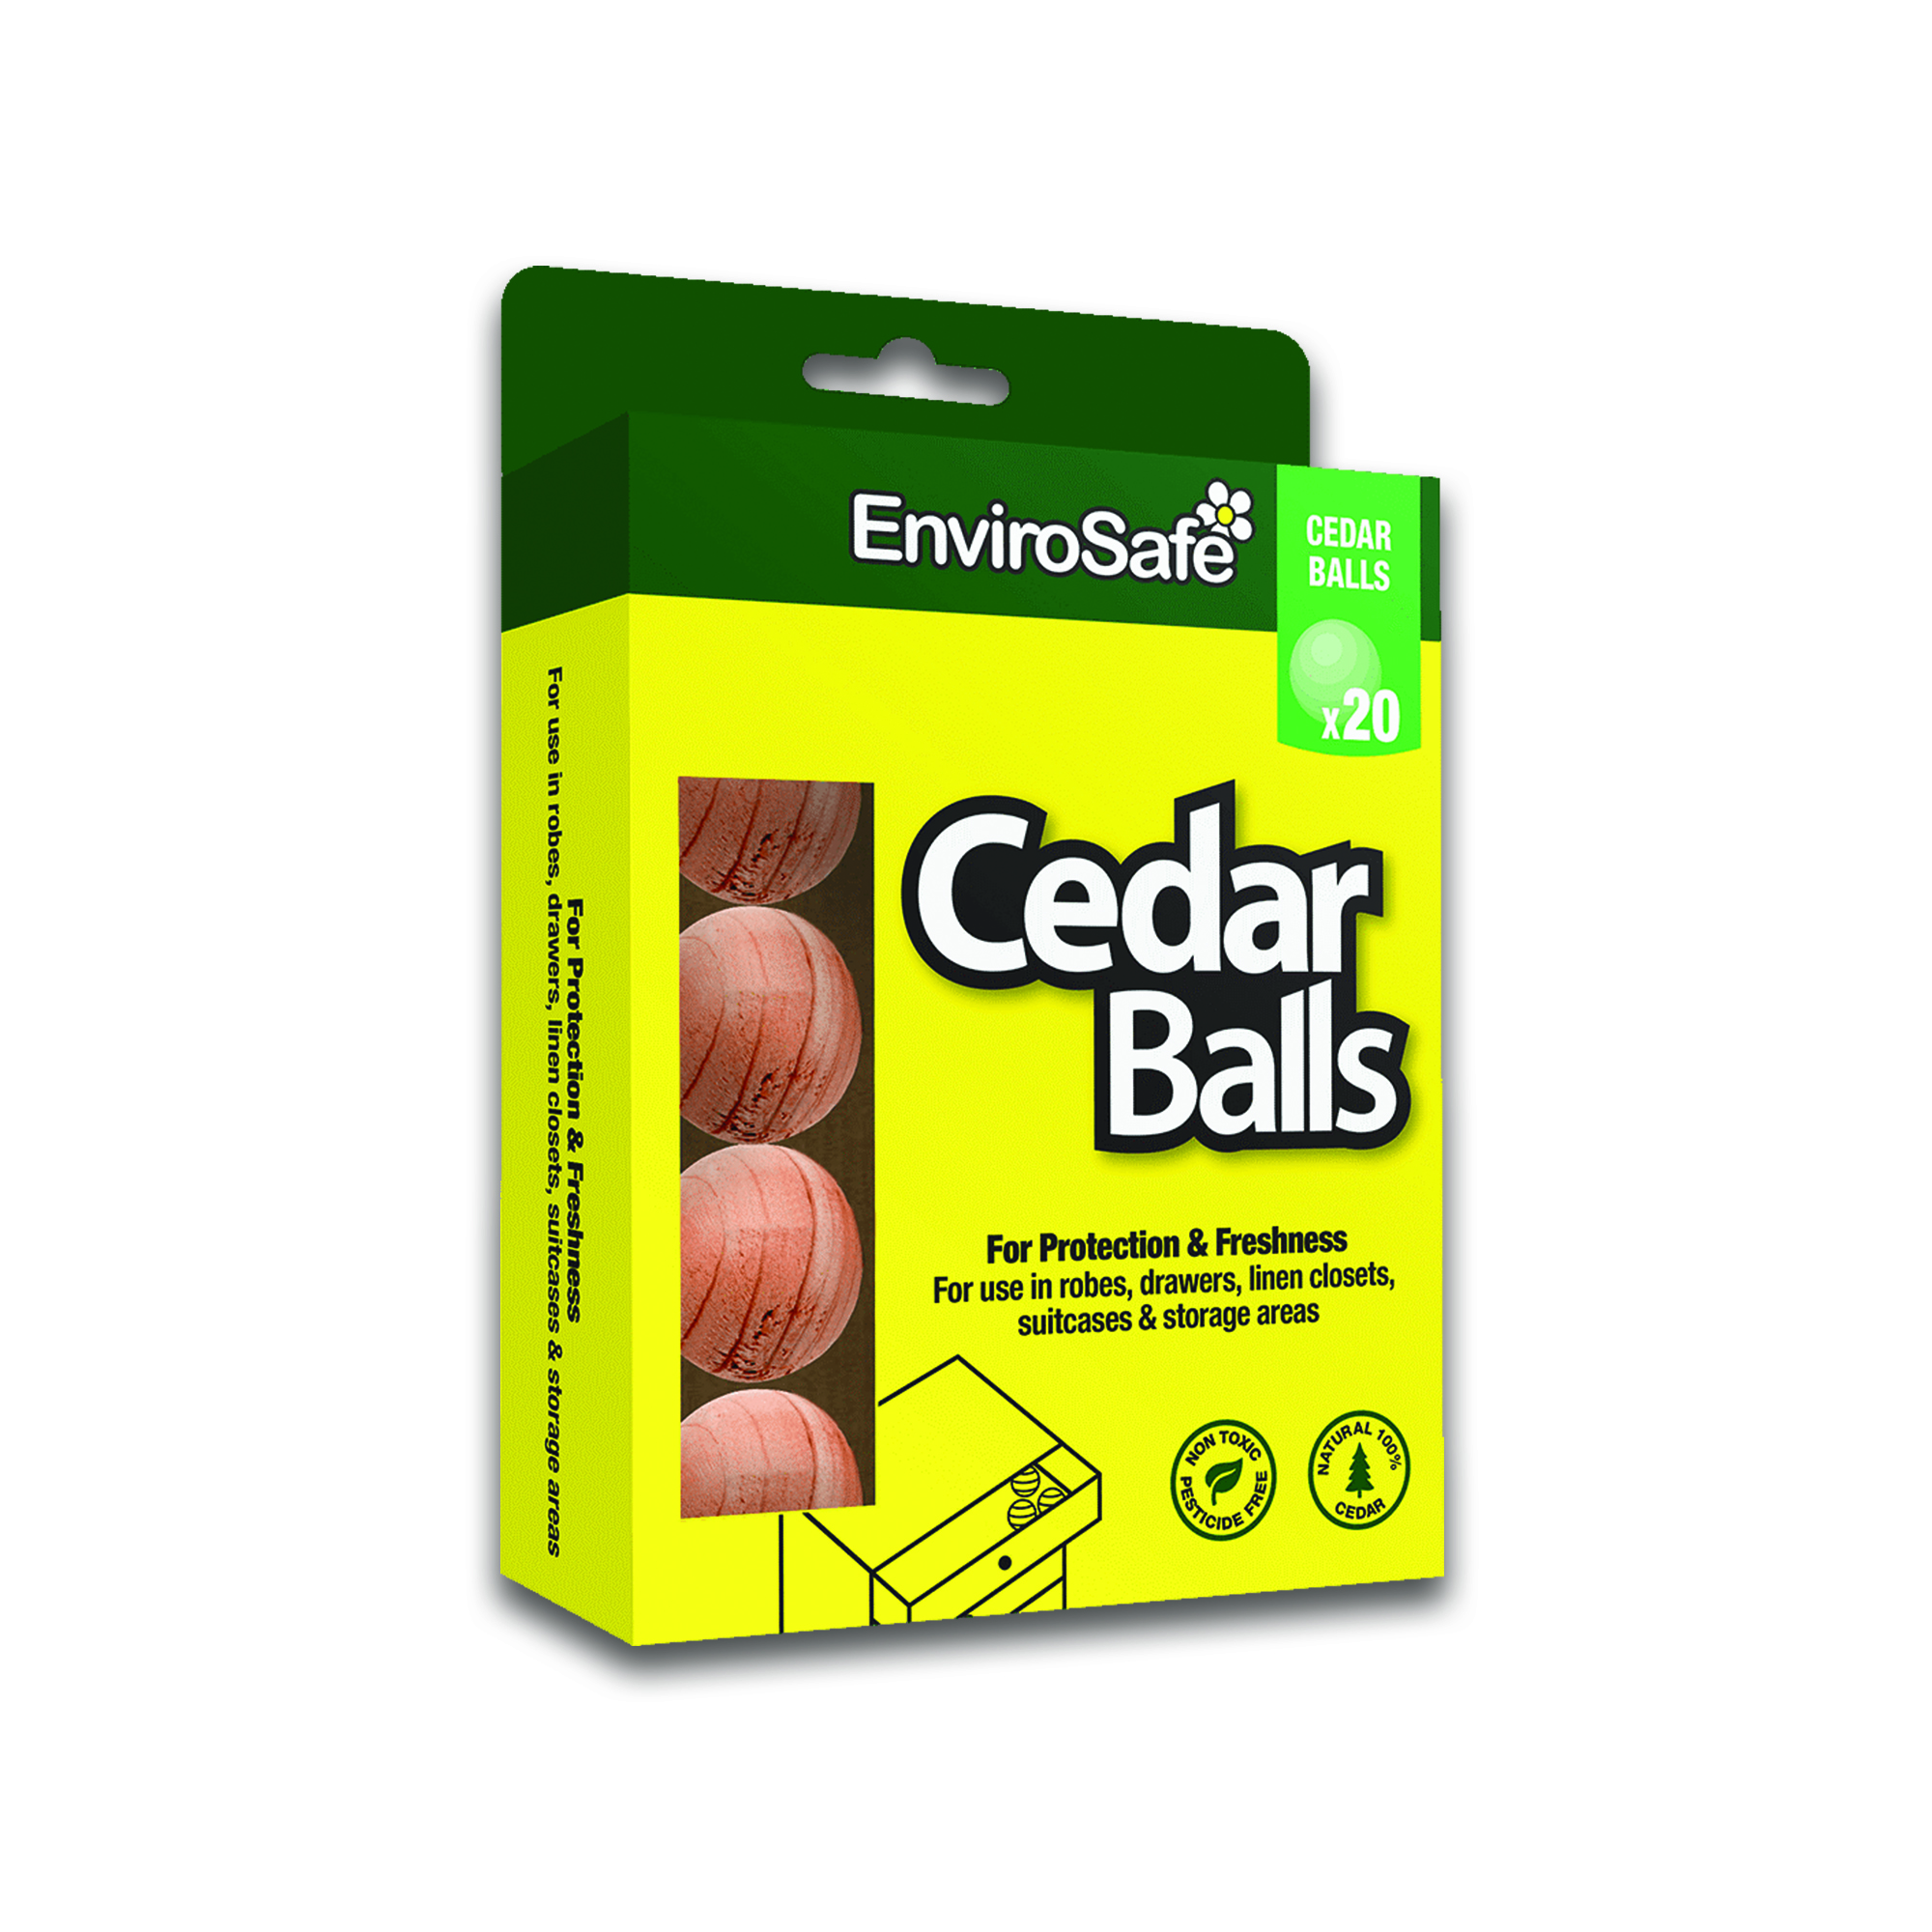 https://envirosafeaustralia.com.au/wp-content/uploads/2021/06/EnviroSafe-Cedar-Ball.jpg